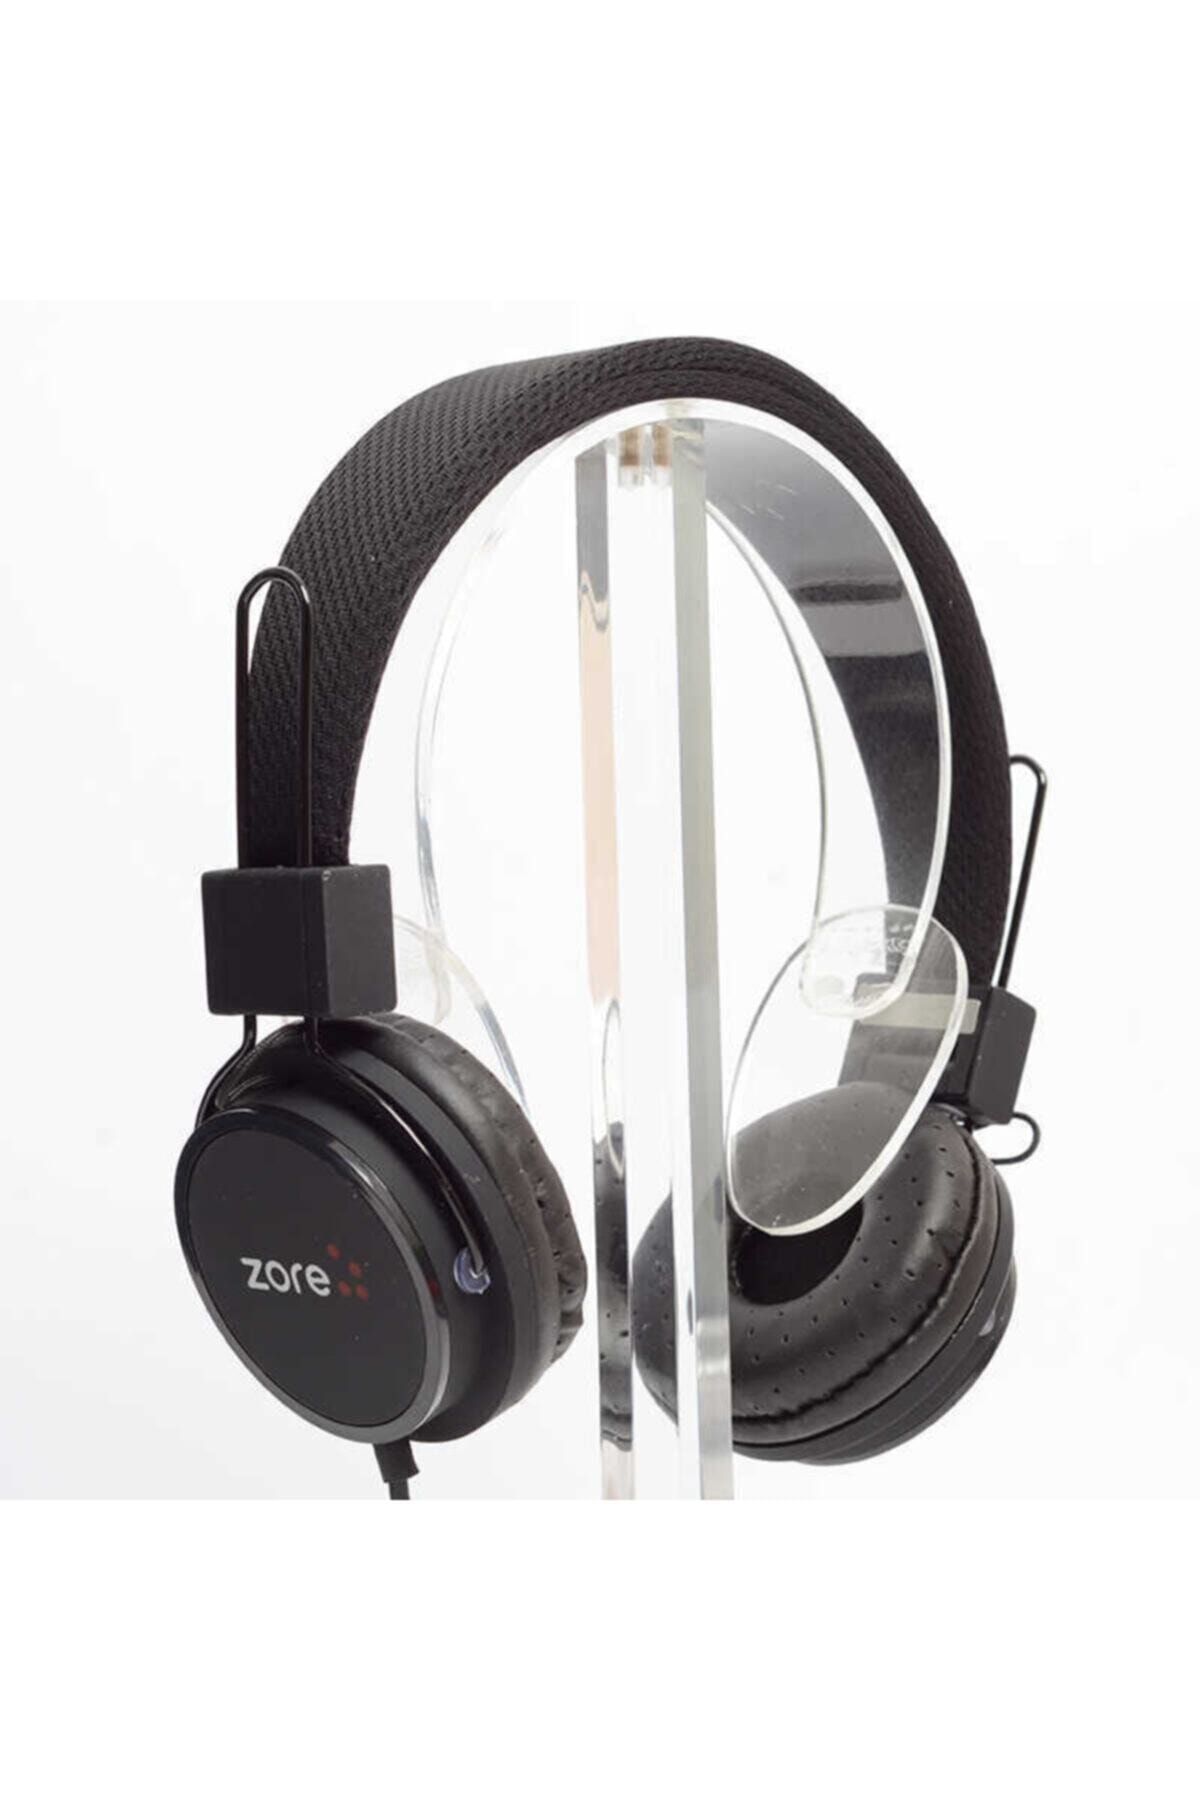 Genel Markalar Kulaküstü Kulaklık Headset Renkli Yumuşak Band Hd Stereo 3.5mm Kulaklık Y-6338